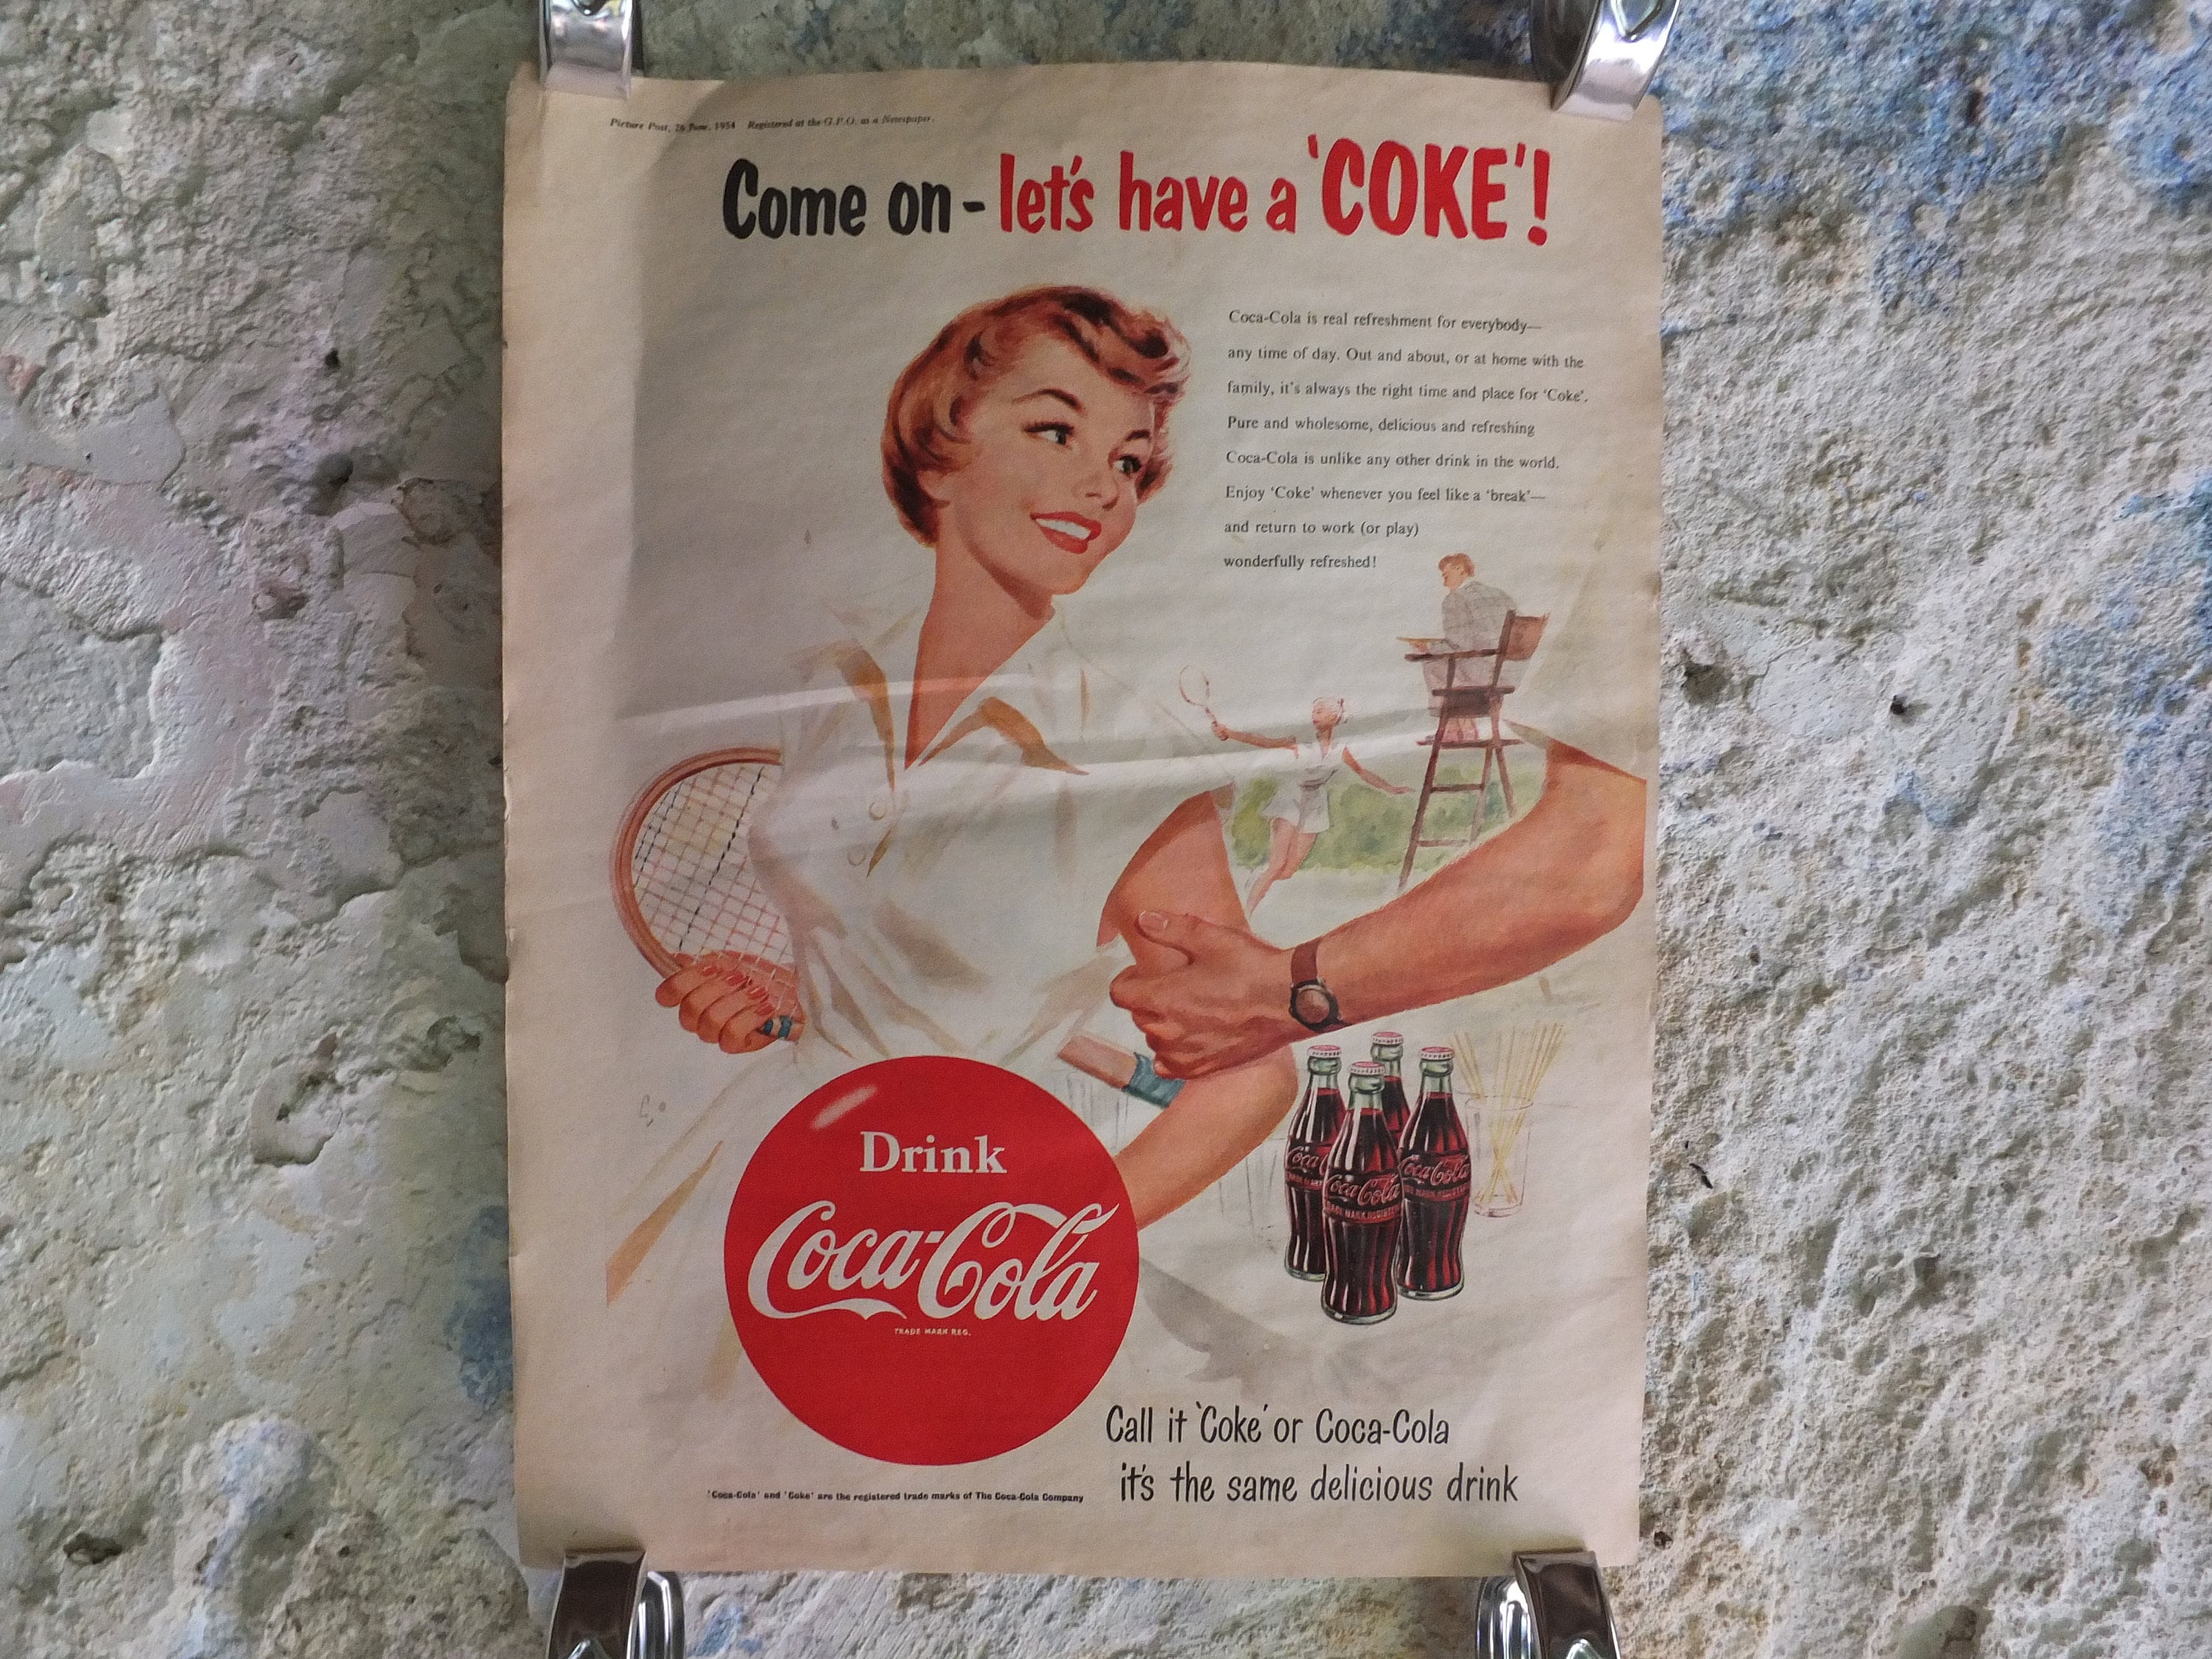 Vintage Cocacola Coke Poster Coca Cola Etsy